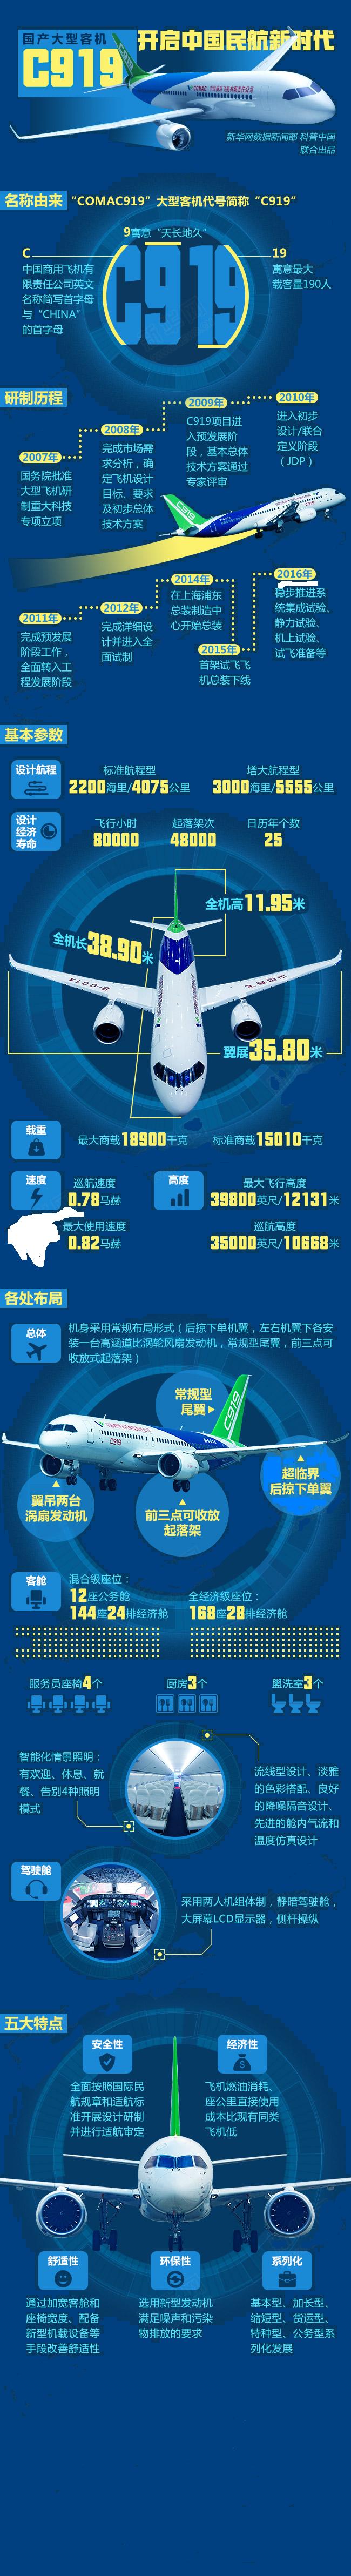 国产大型客机c919:开启中国民航新时代